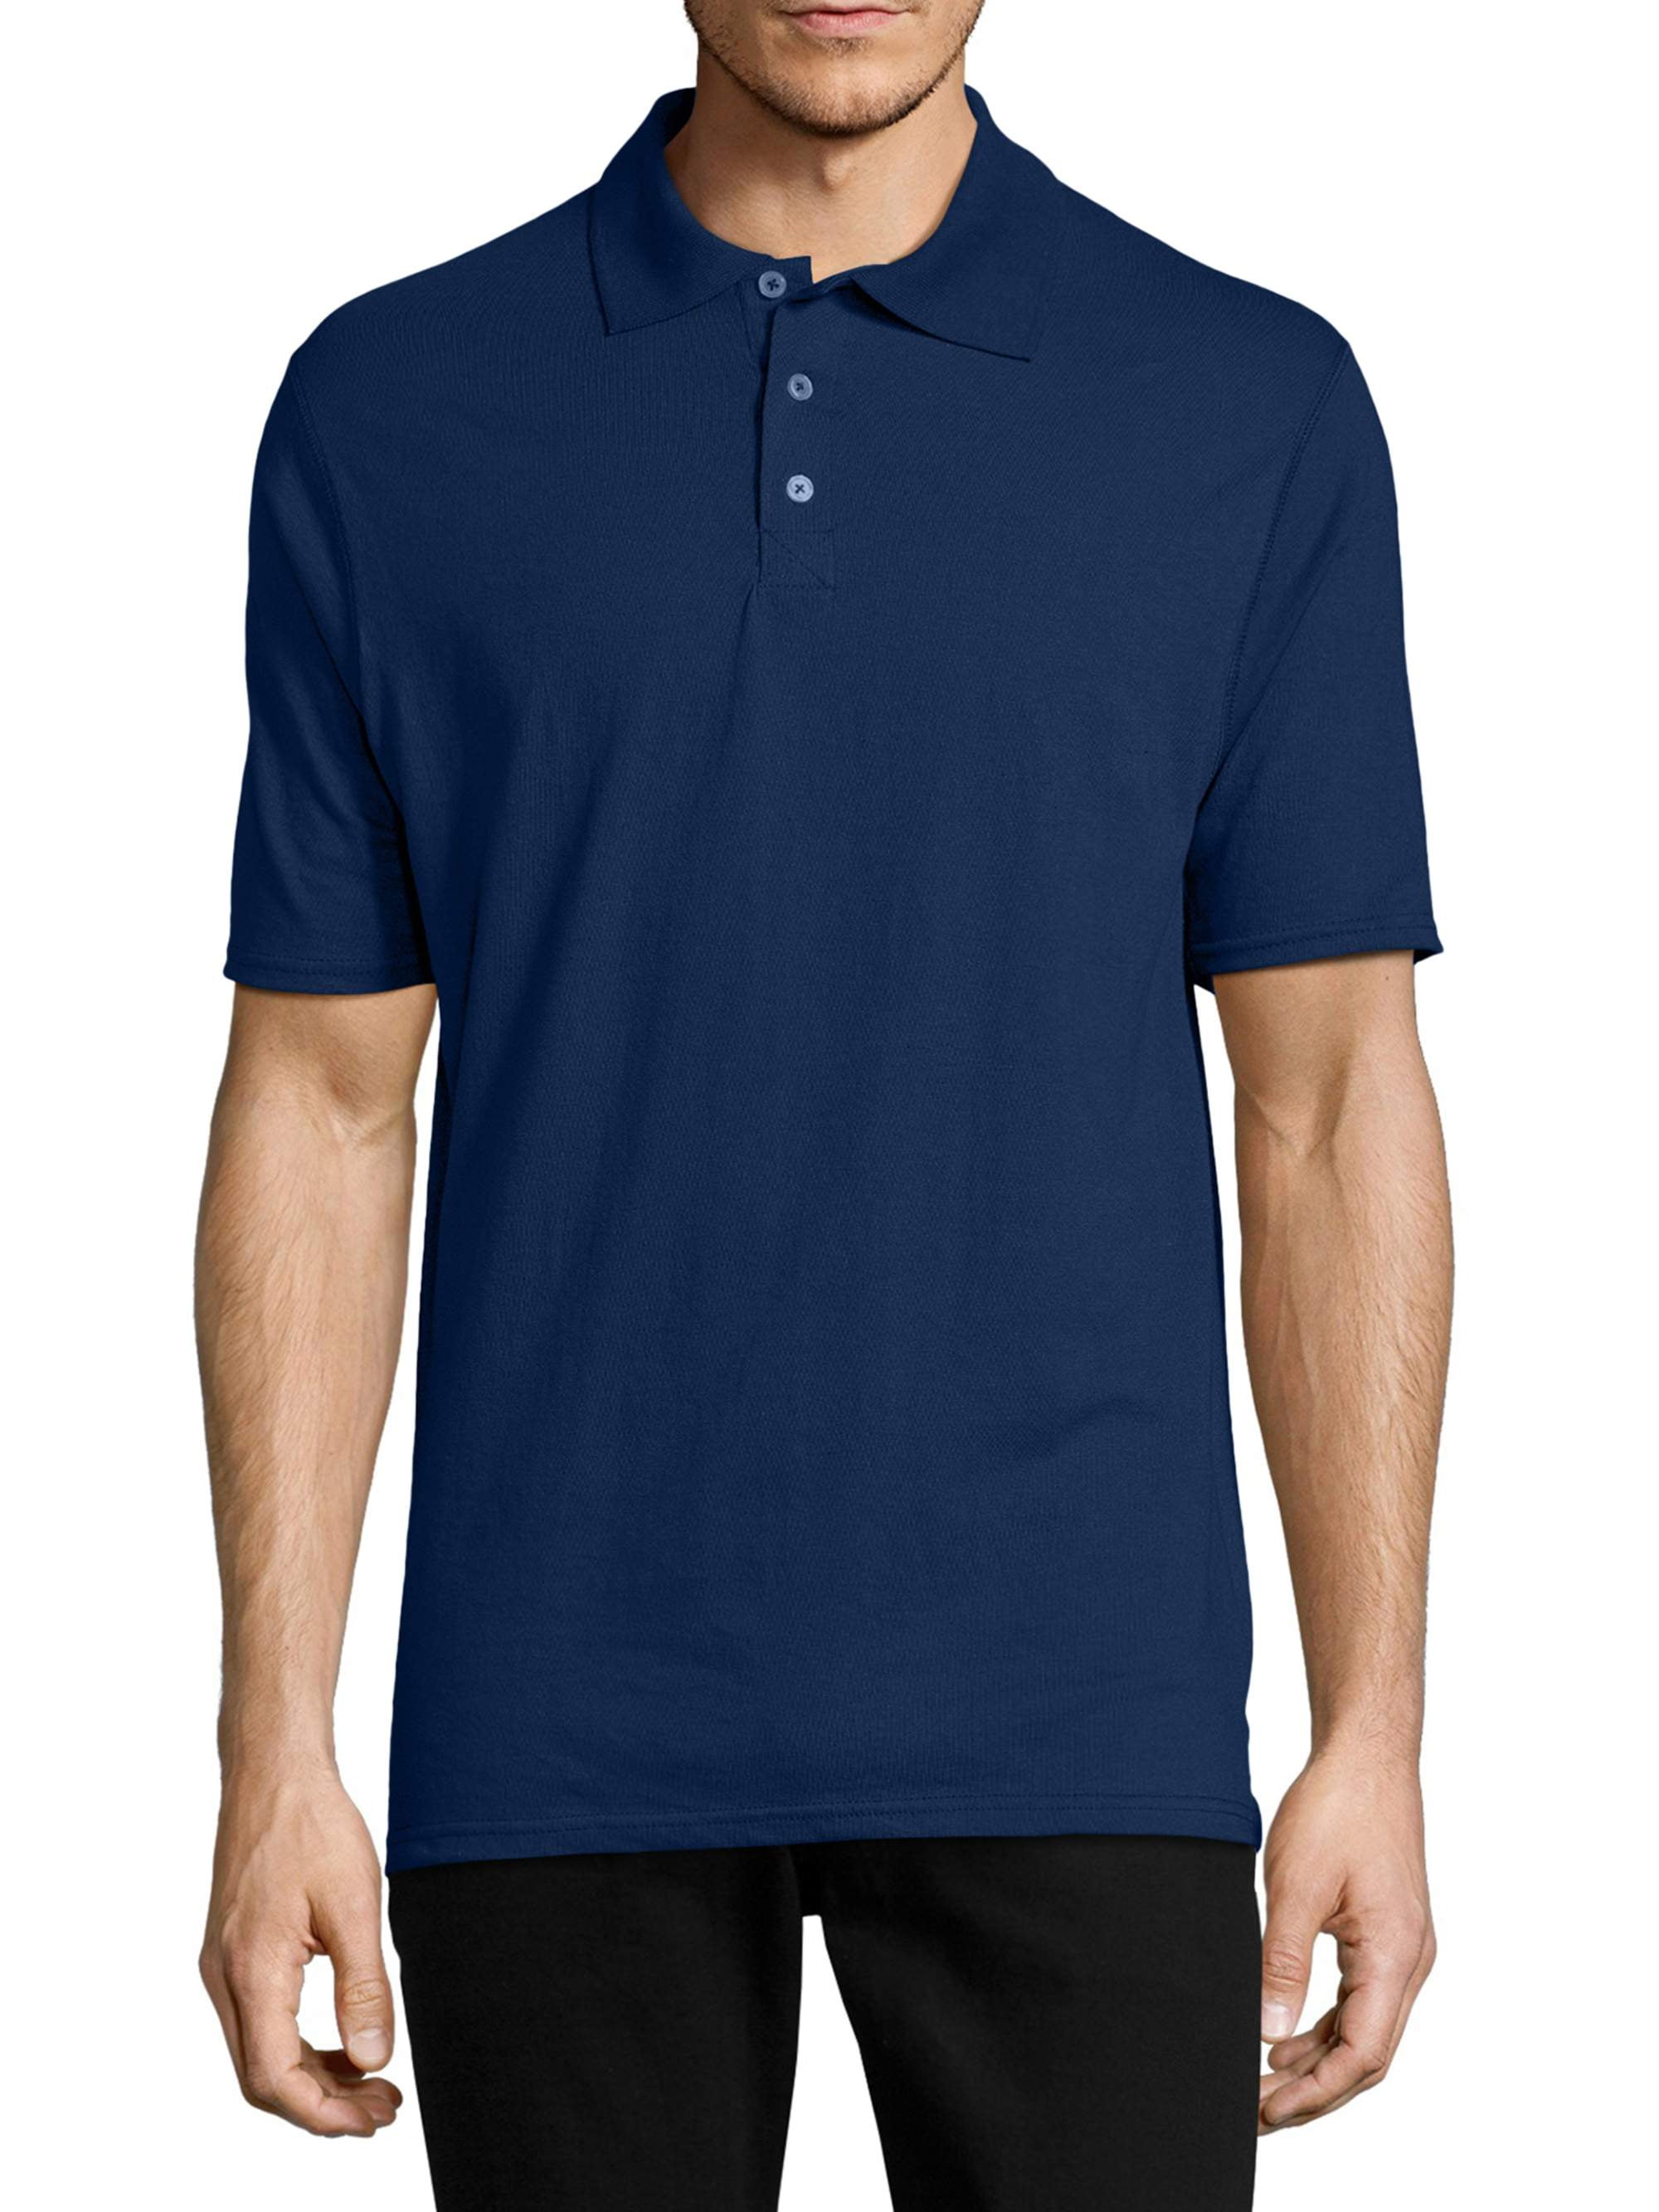 LL Tech Long Sleeve Shirt 2.0 Symphony Blue SZ 16 -NEW